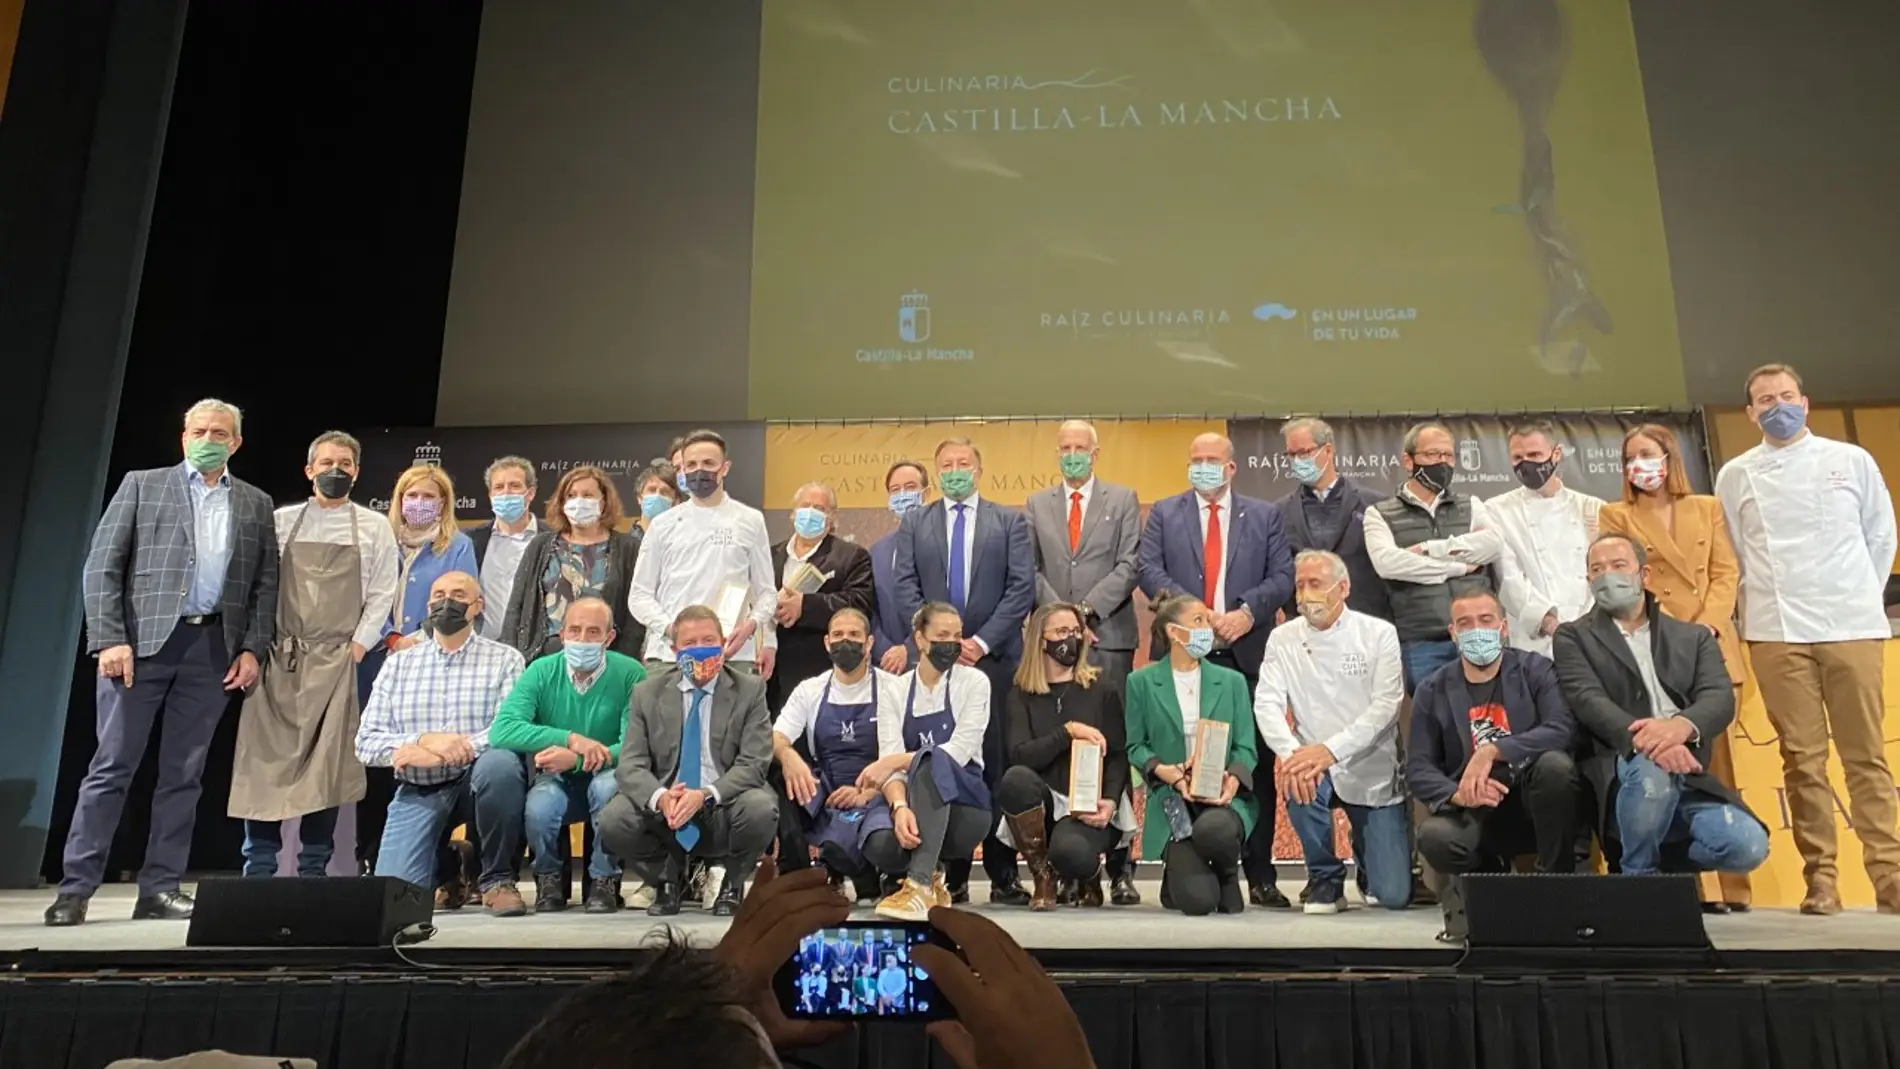 Premiados y autoridades en el Teatro Auditorio de Cuenca durante Culinaria 2021